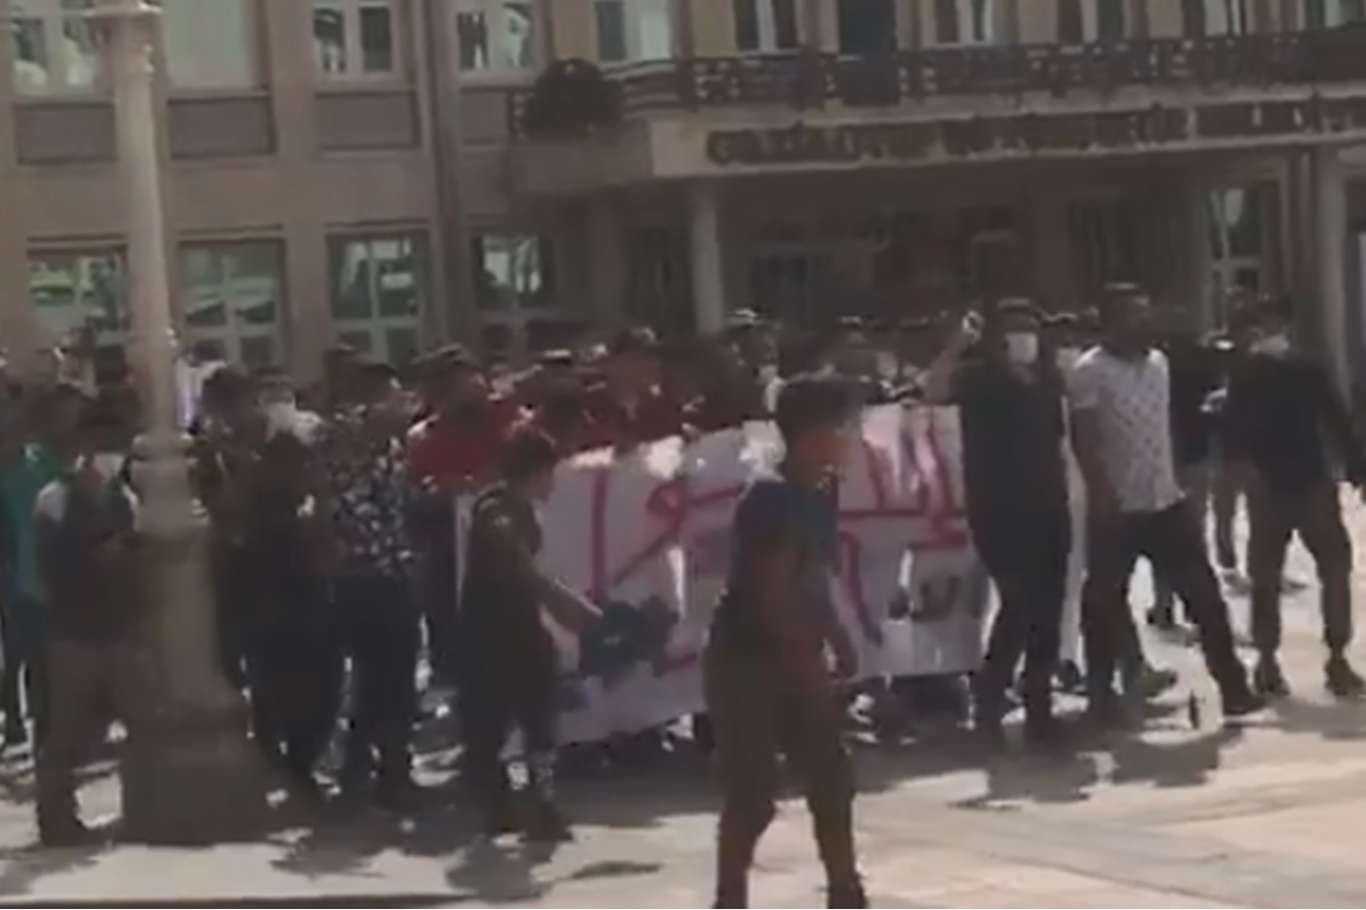 Gaziantep Valiliği, Suriyelilerin Fransa'yı protesto etmek için yürüdüğünü açıkladı